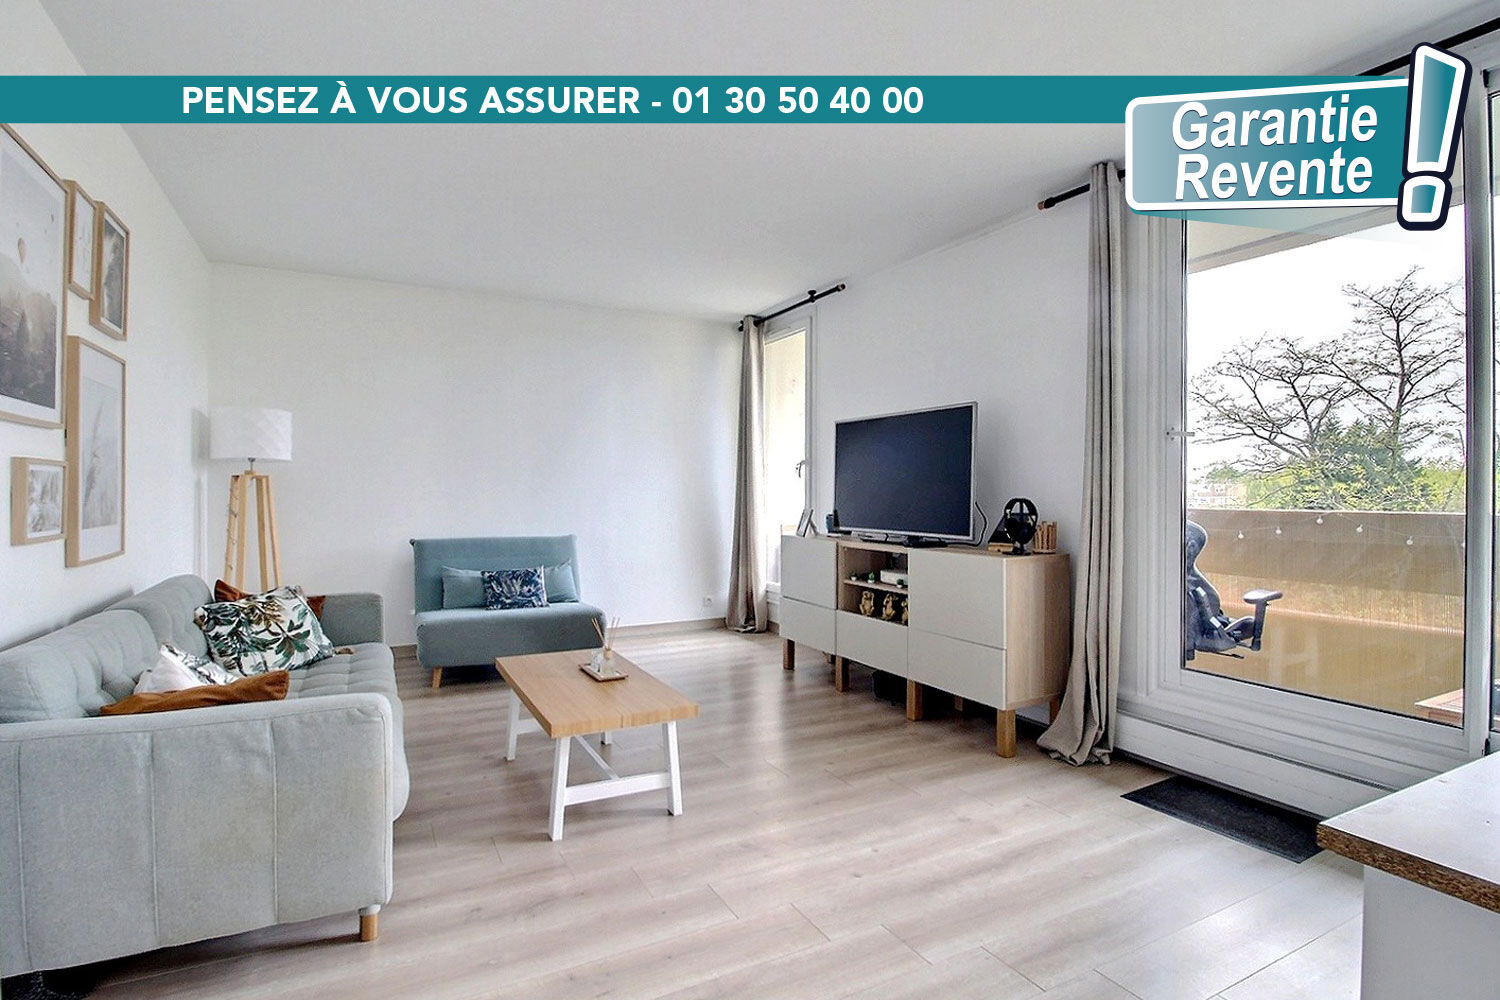 Appartement 4 pièces 87 m² elancourt